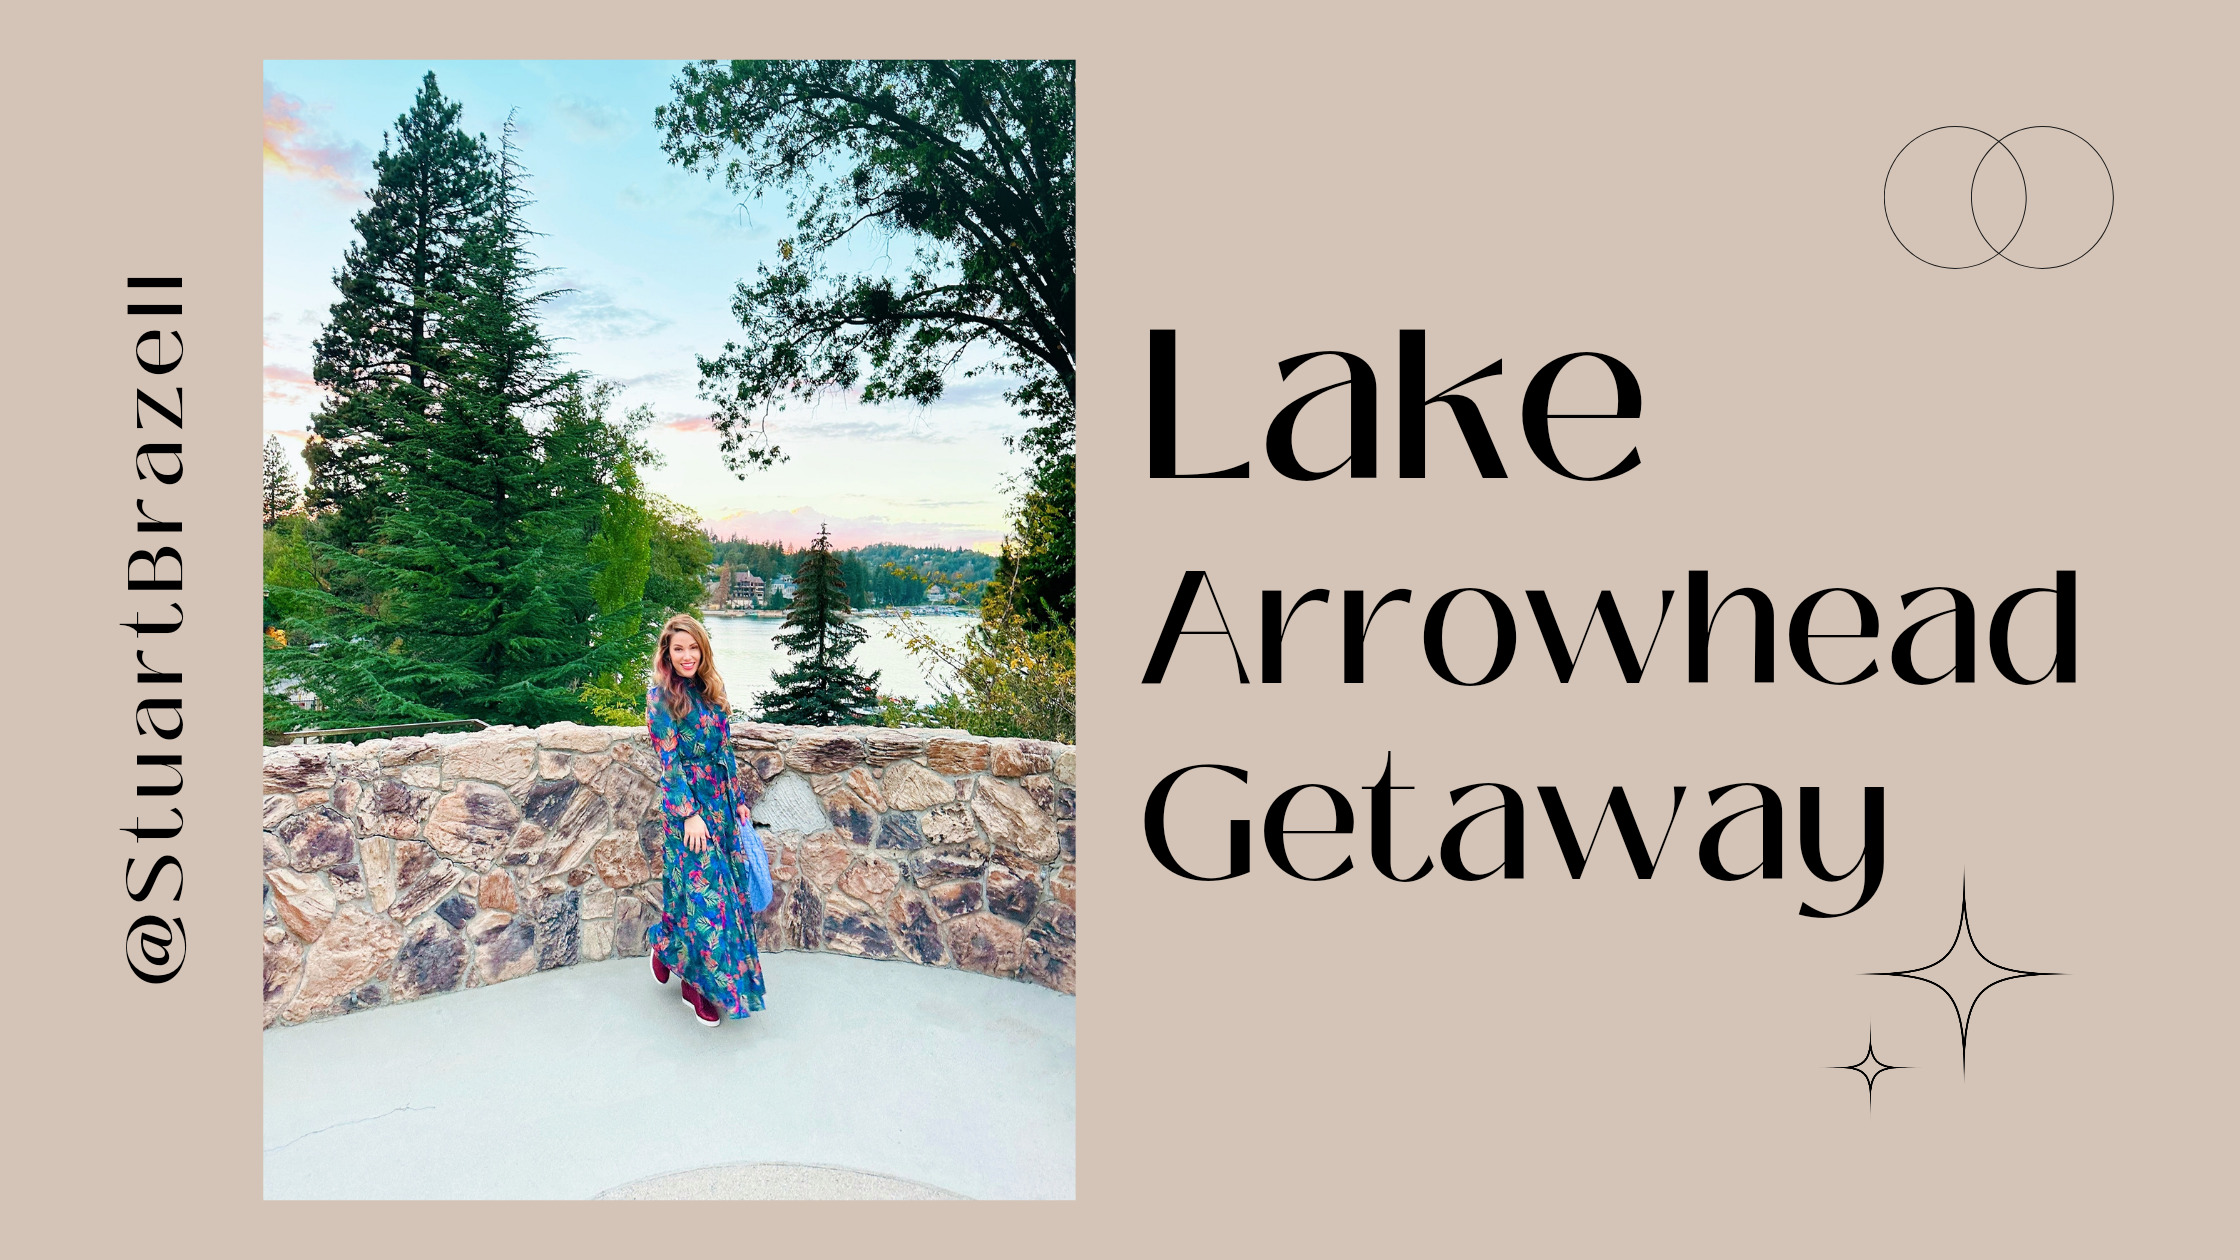 Our Romantic Getaway at Lake Arrowhead Resort & Spa